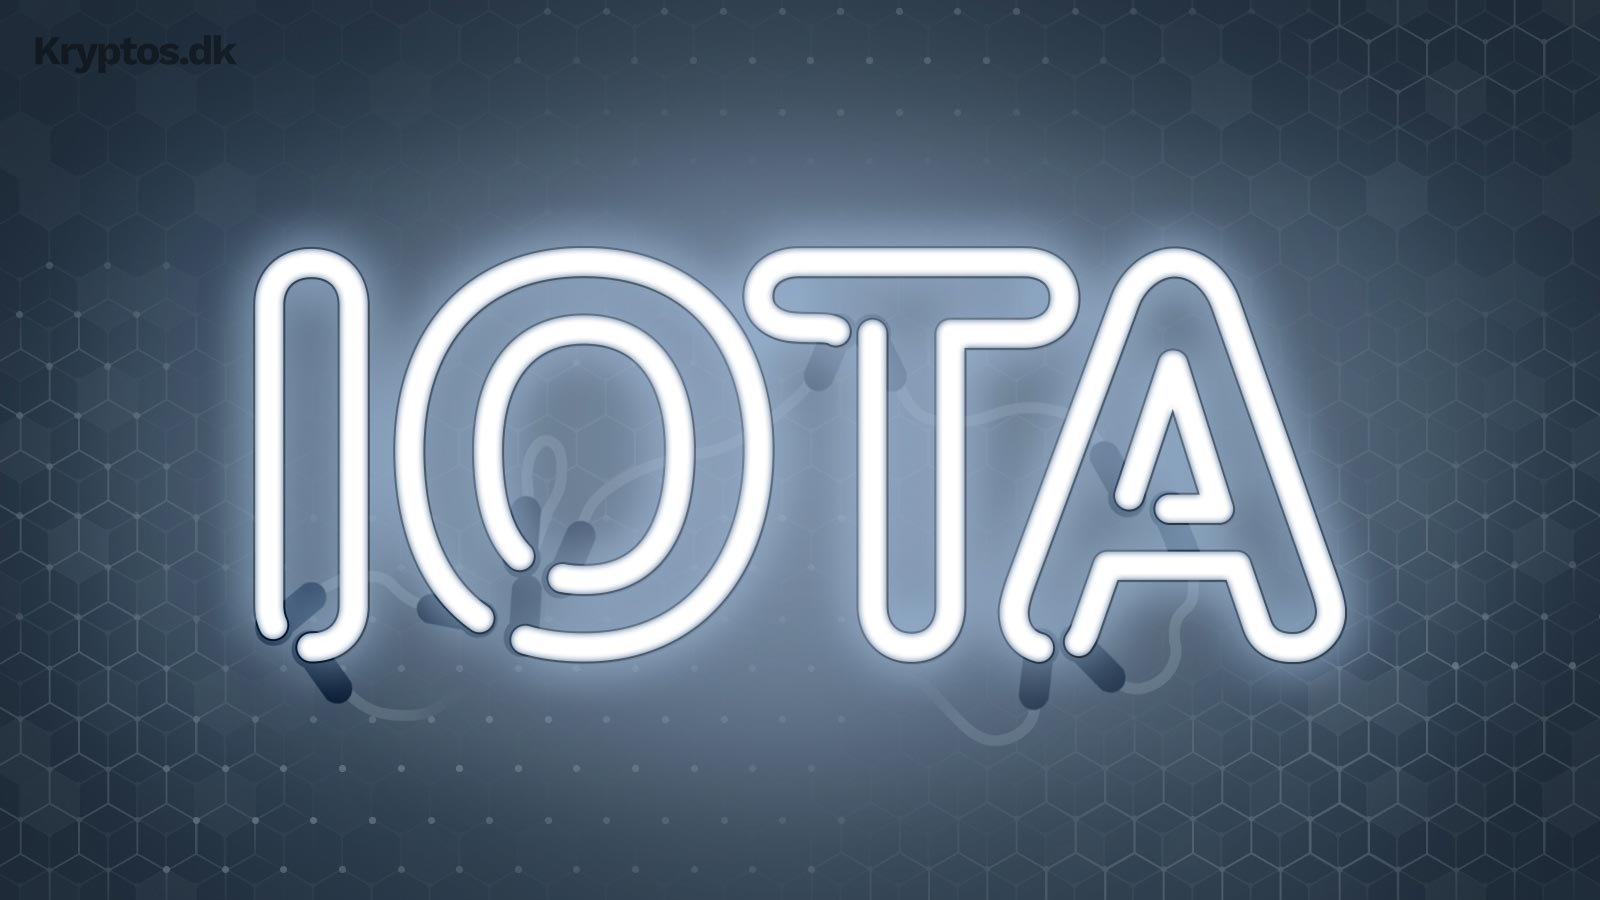 Hvad er IOTA?